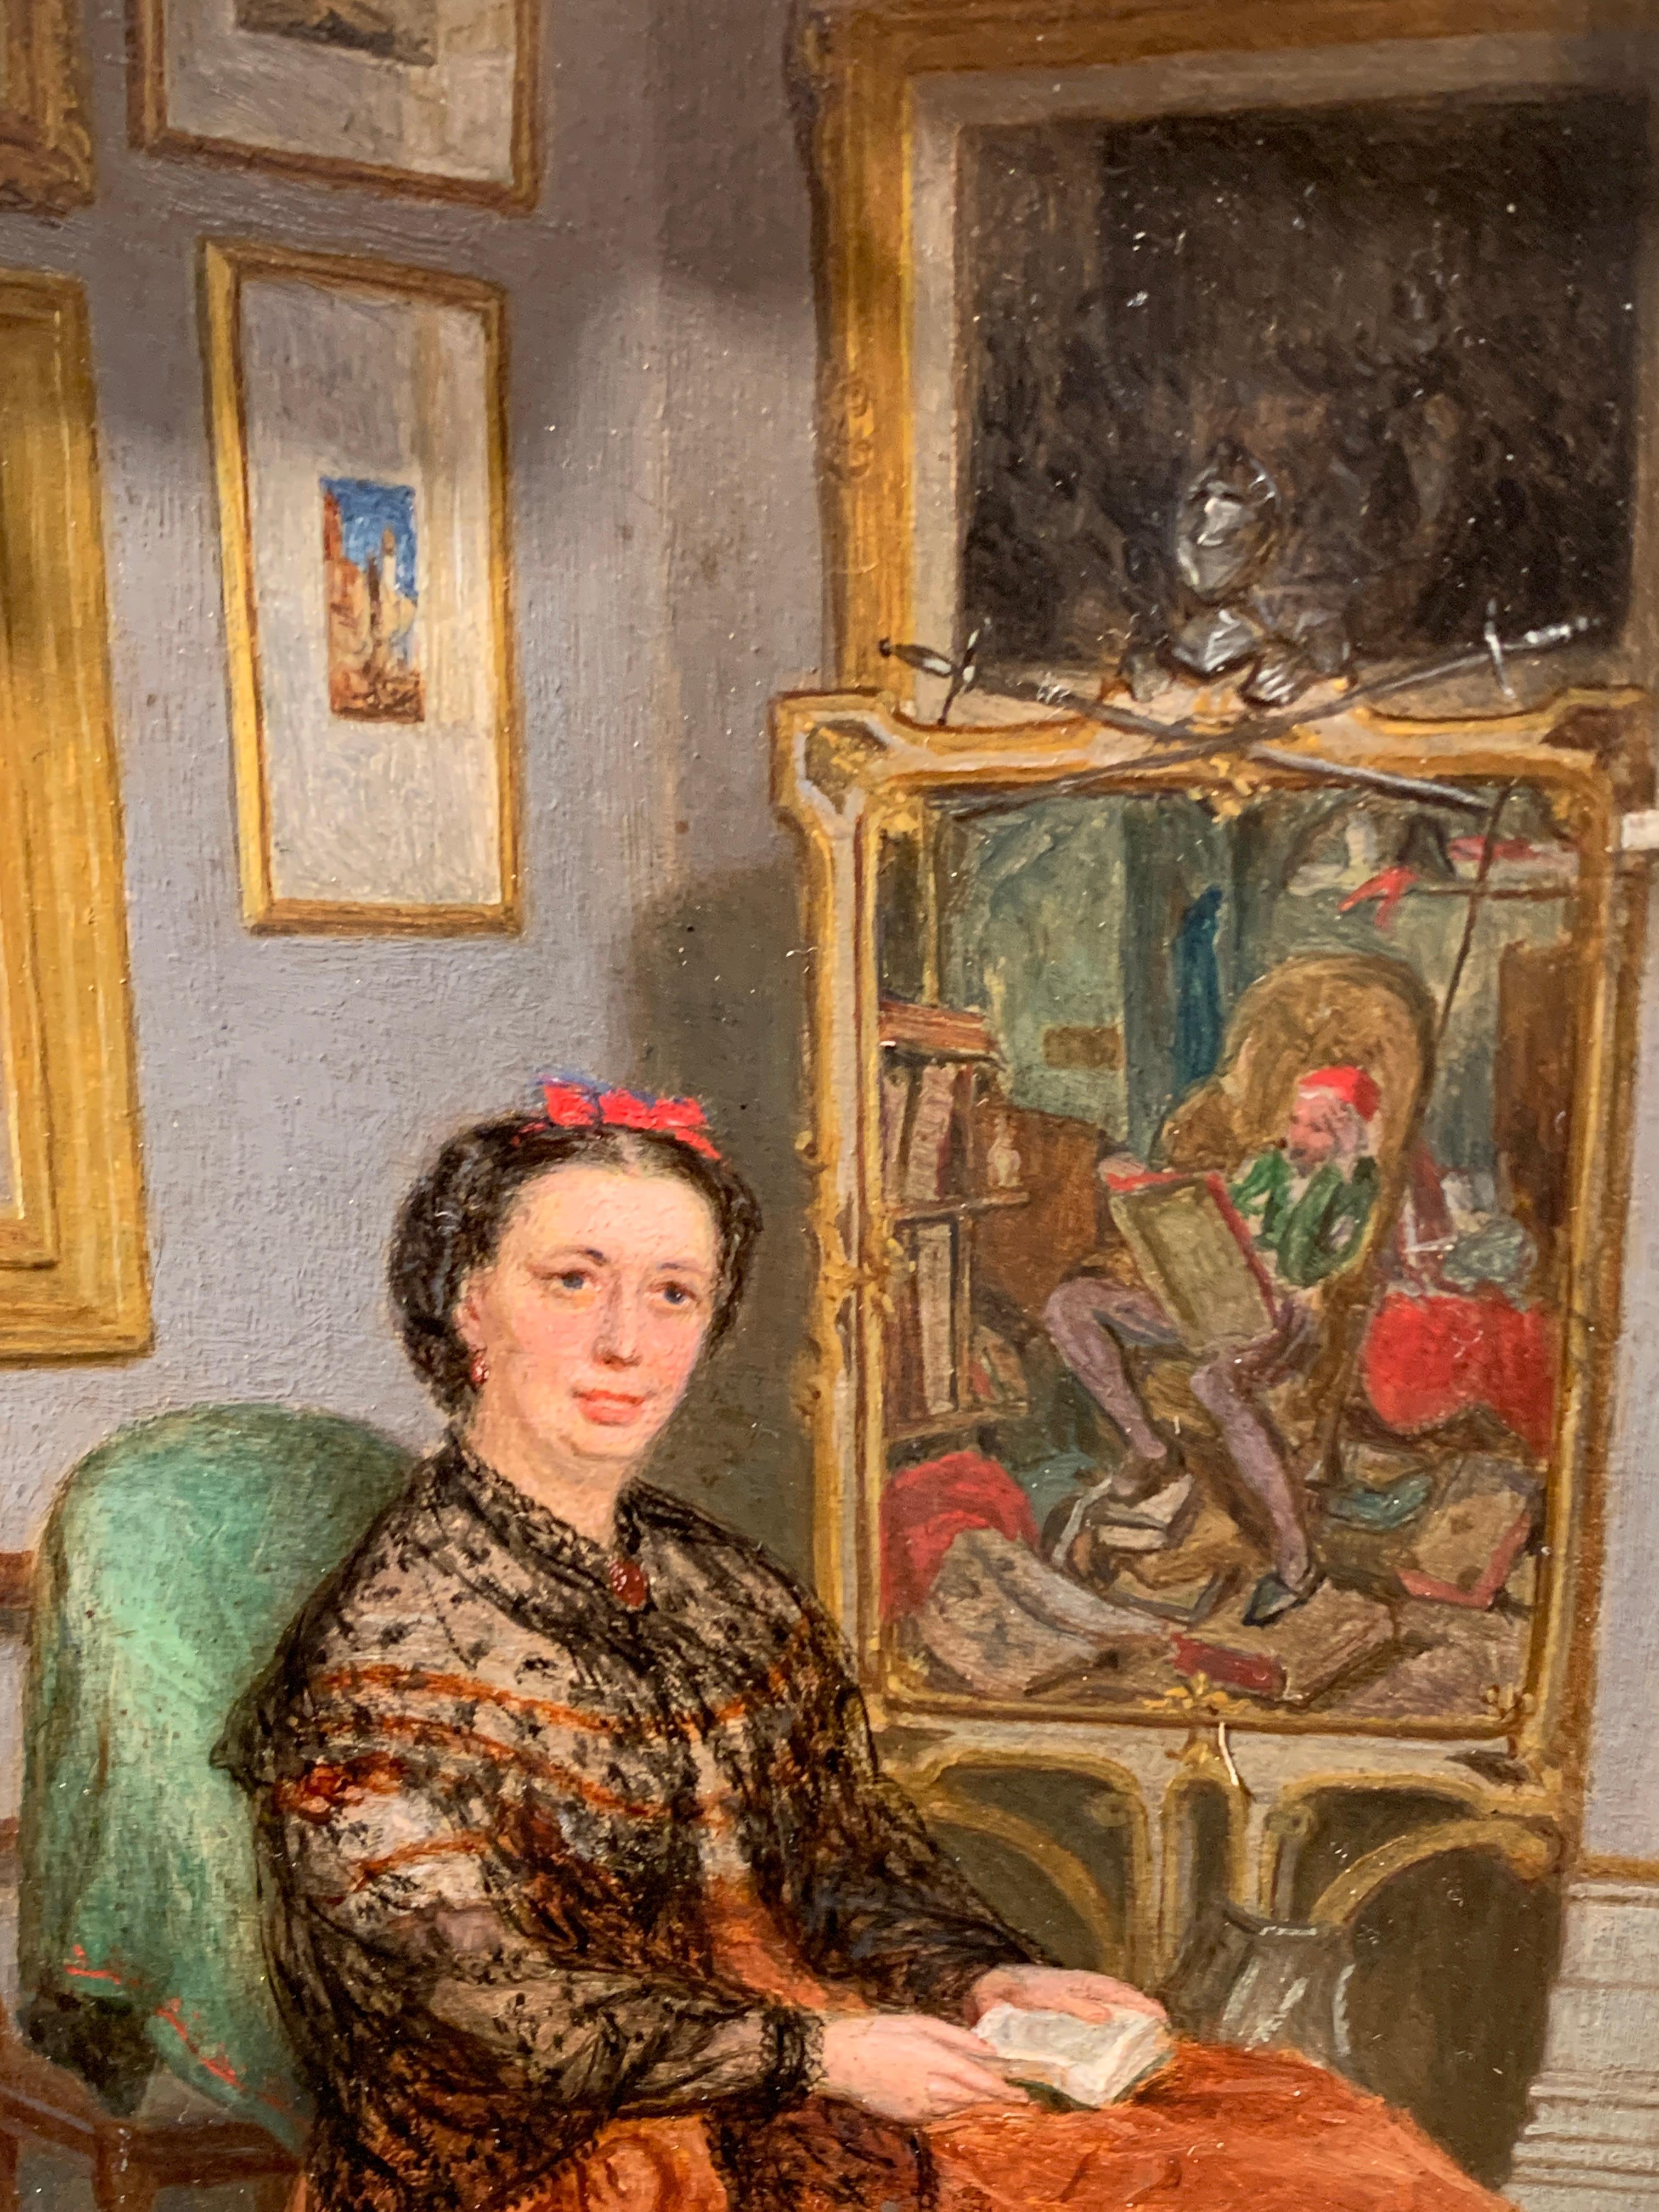 Englisch 19. Jahrhundert viktorianischen antiken Porträt einer sitzenden Dame in ihrem Inneren

Viktorianisches Porträt-Interieur.

John Waston Chapman war ein Maler von Landschaften, Landschaften und Genre-Innenansichten. Er stellte mehr als 30